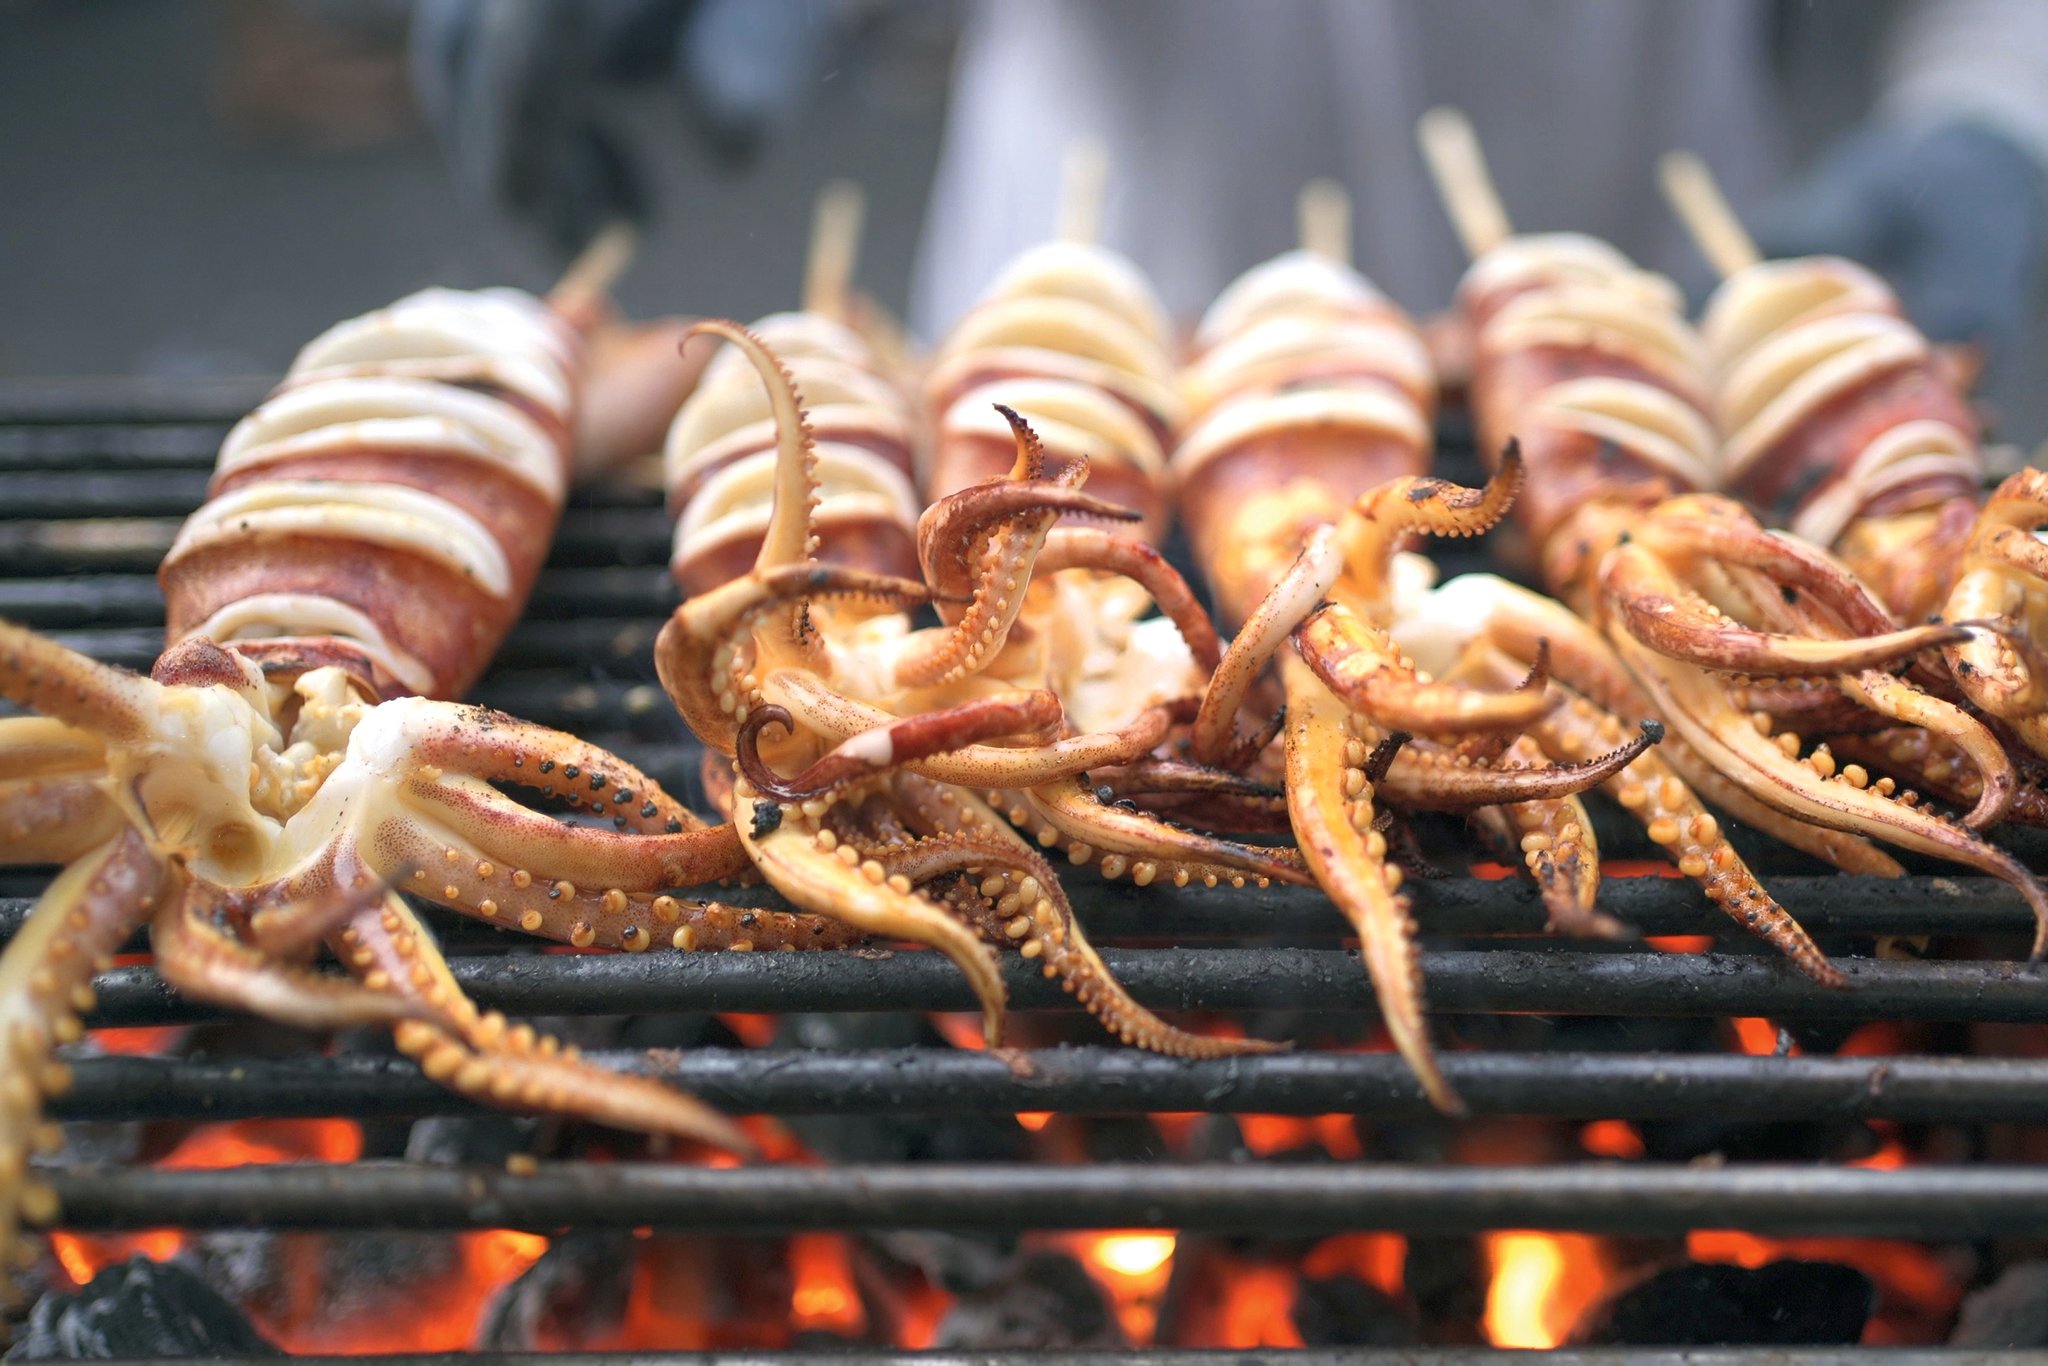 Seafood ist Standard, vor allem im Süden des Landes. Tintenfische, Garnelen und Co. werden immer ganz frisch zubereitet.